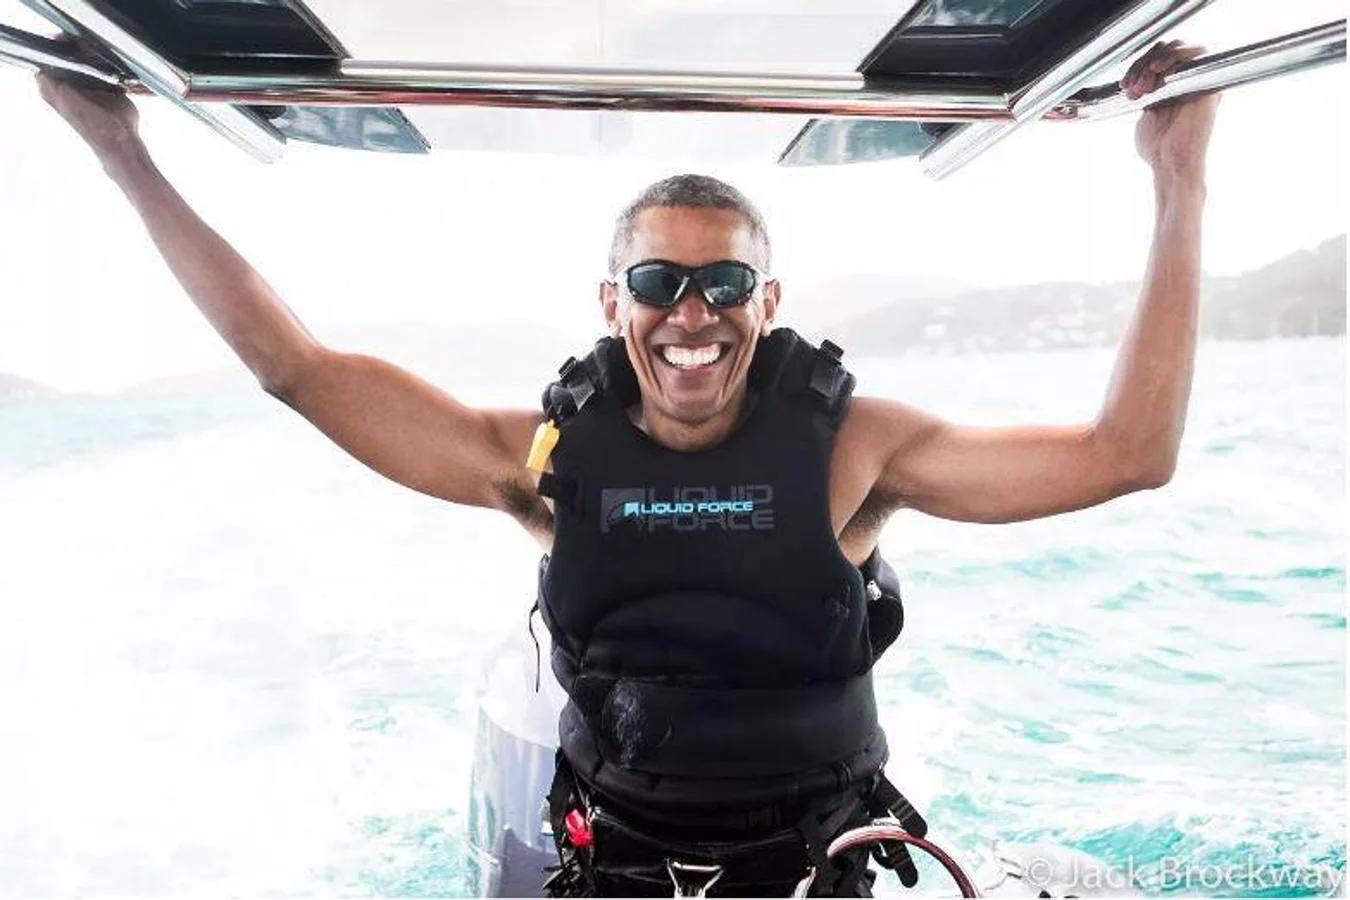 El expresidente de Estados Unidos, Barack Obama, y su esposa Michelle disfrutaron hace unas semanas de sus primeras vacaciones en las Islas Vírgenes Británicas, después de ocho largos años al frente de la Casa Blanca